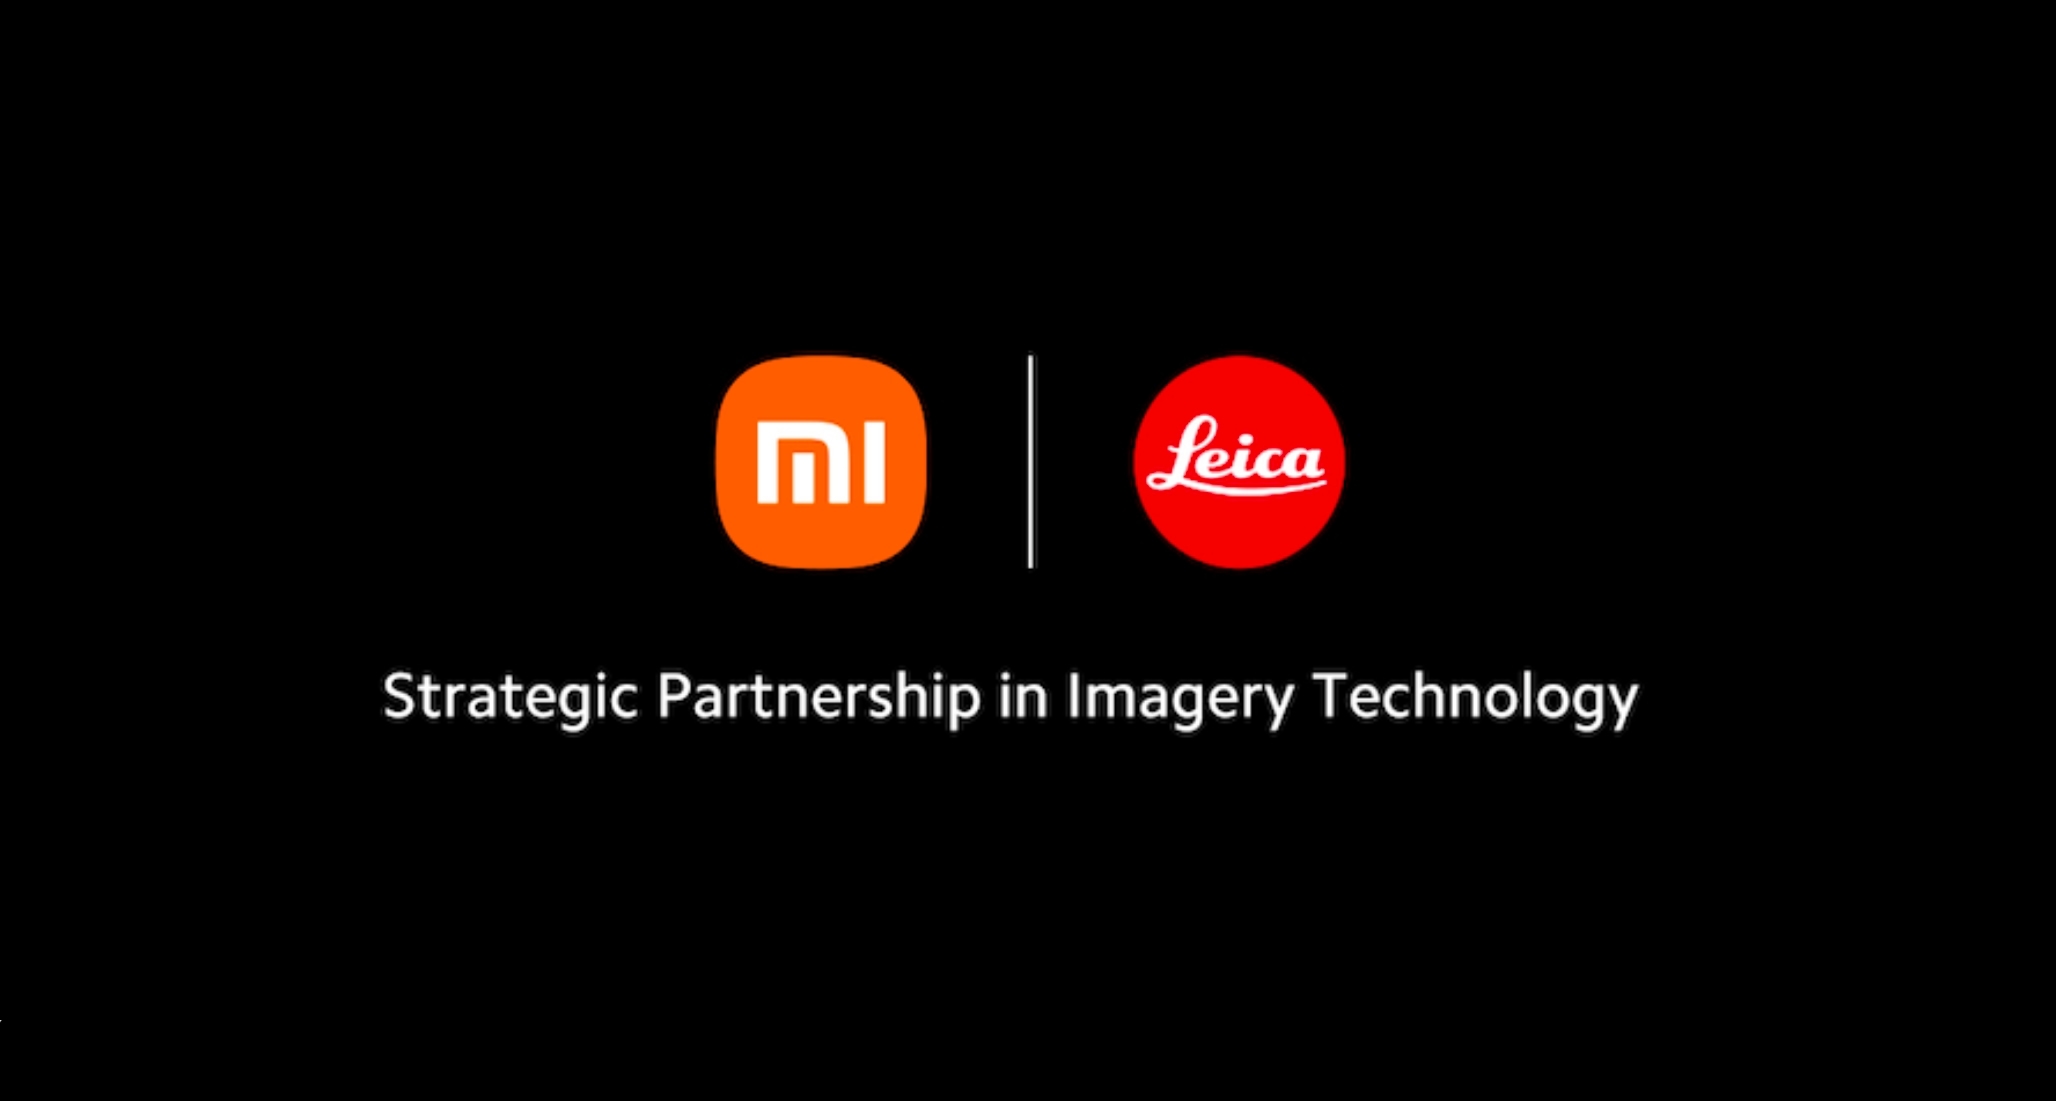 Xiaomi und Leica geben Partnerschaft für mobile Fotografie bekannt